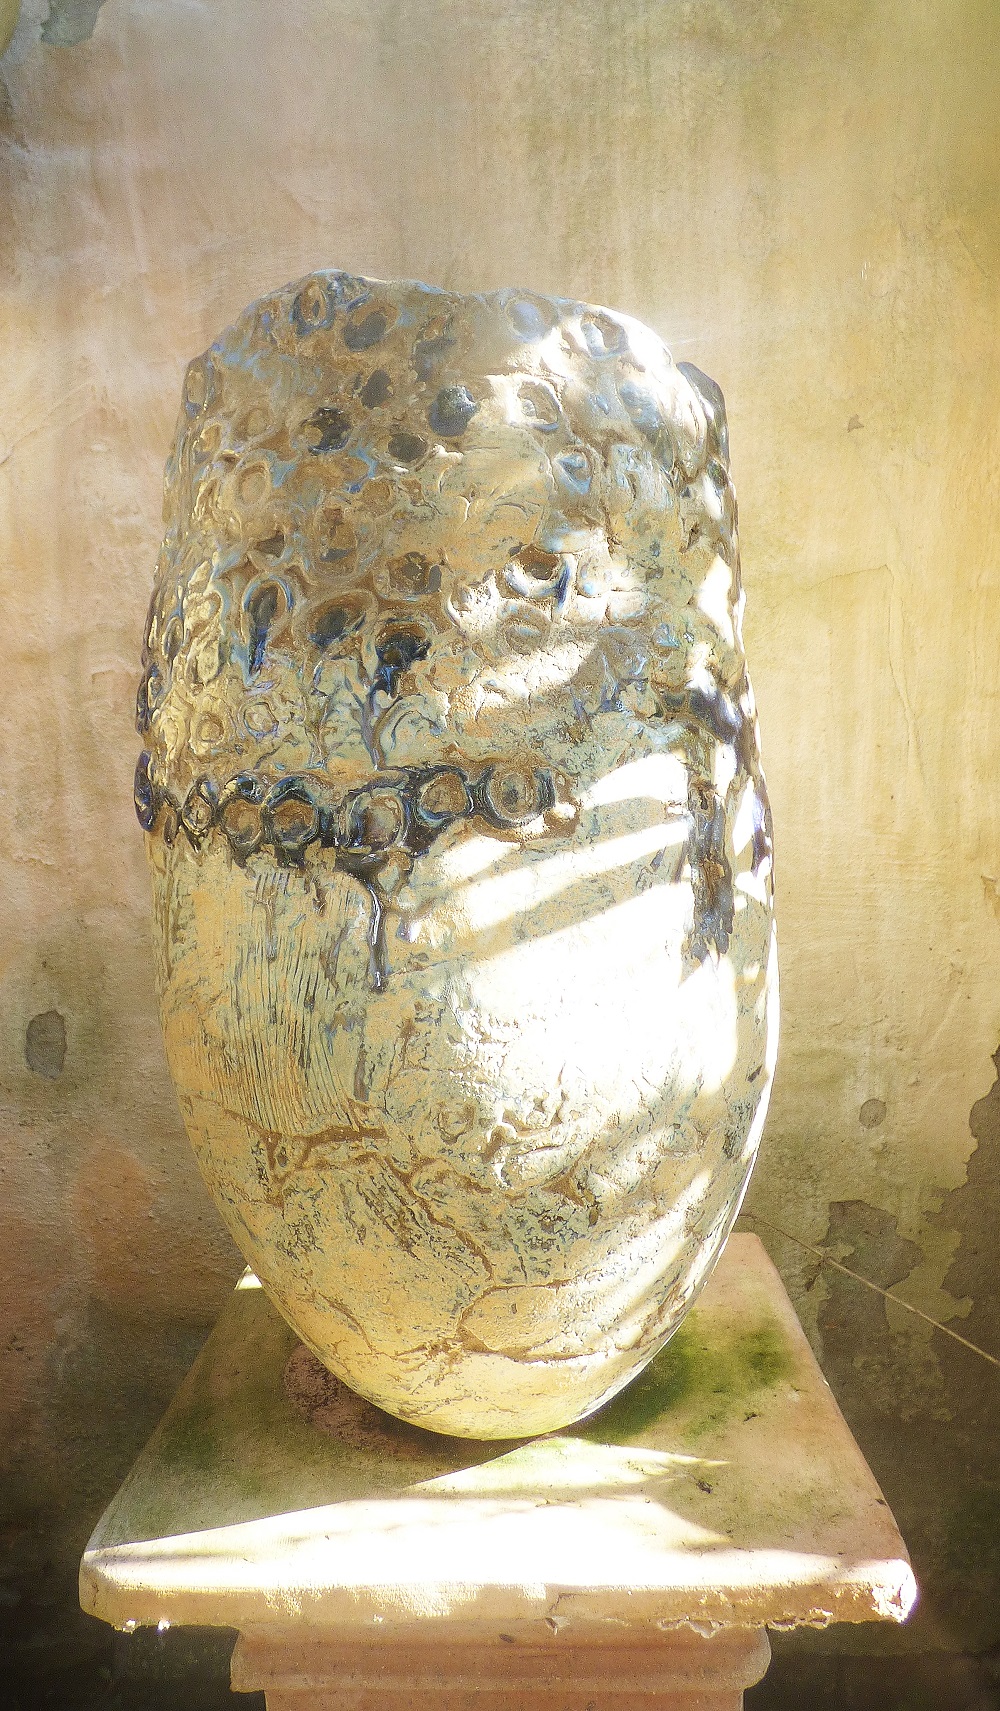 Kunstvolle Vase